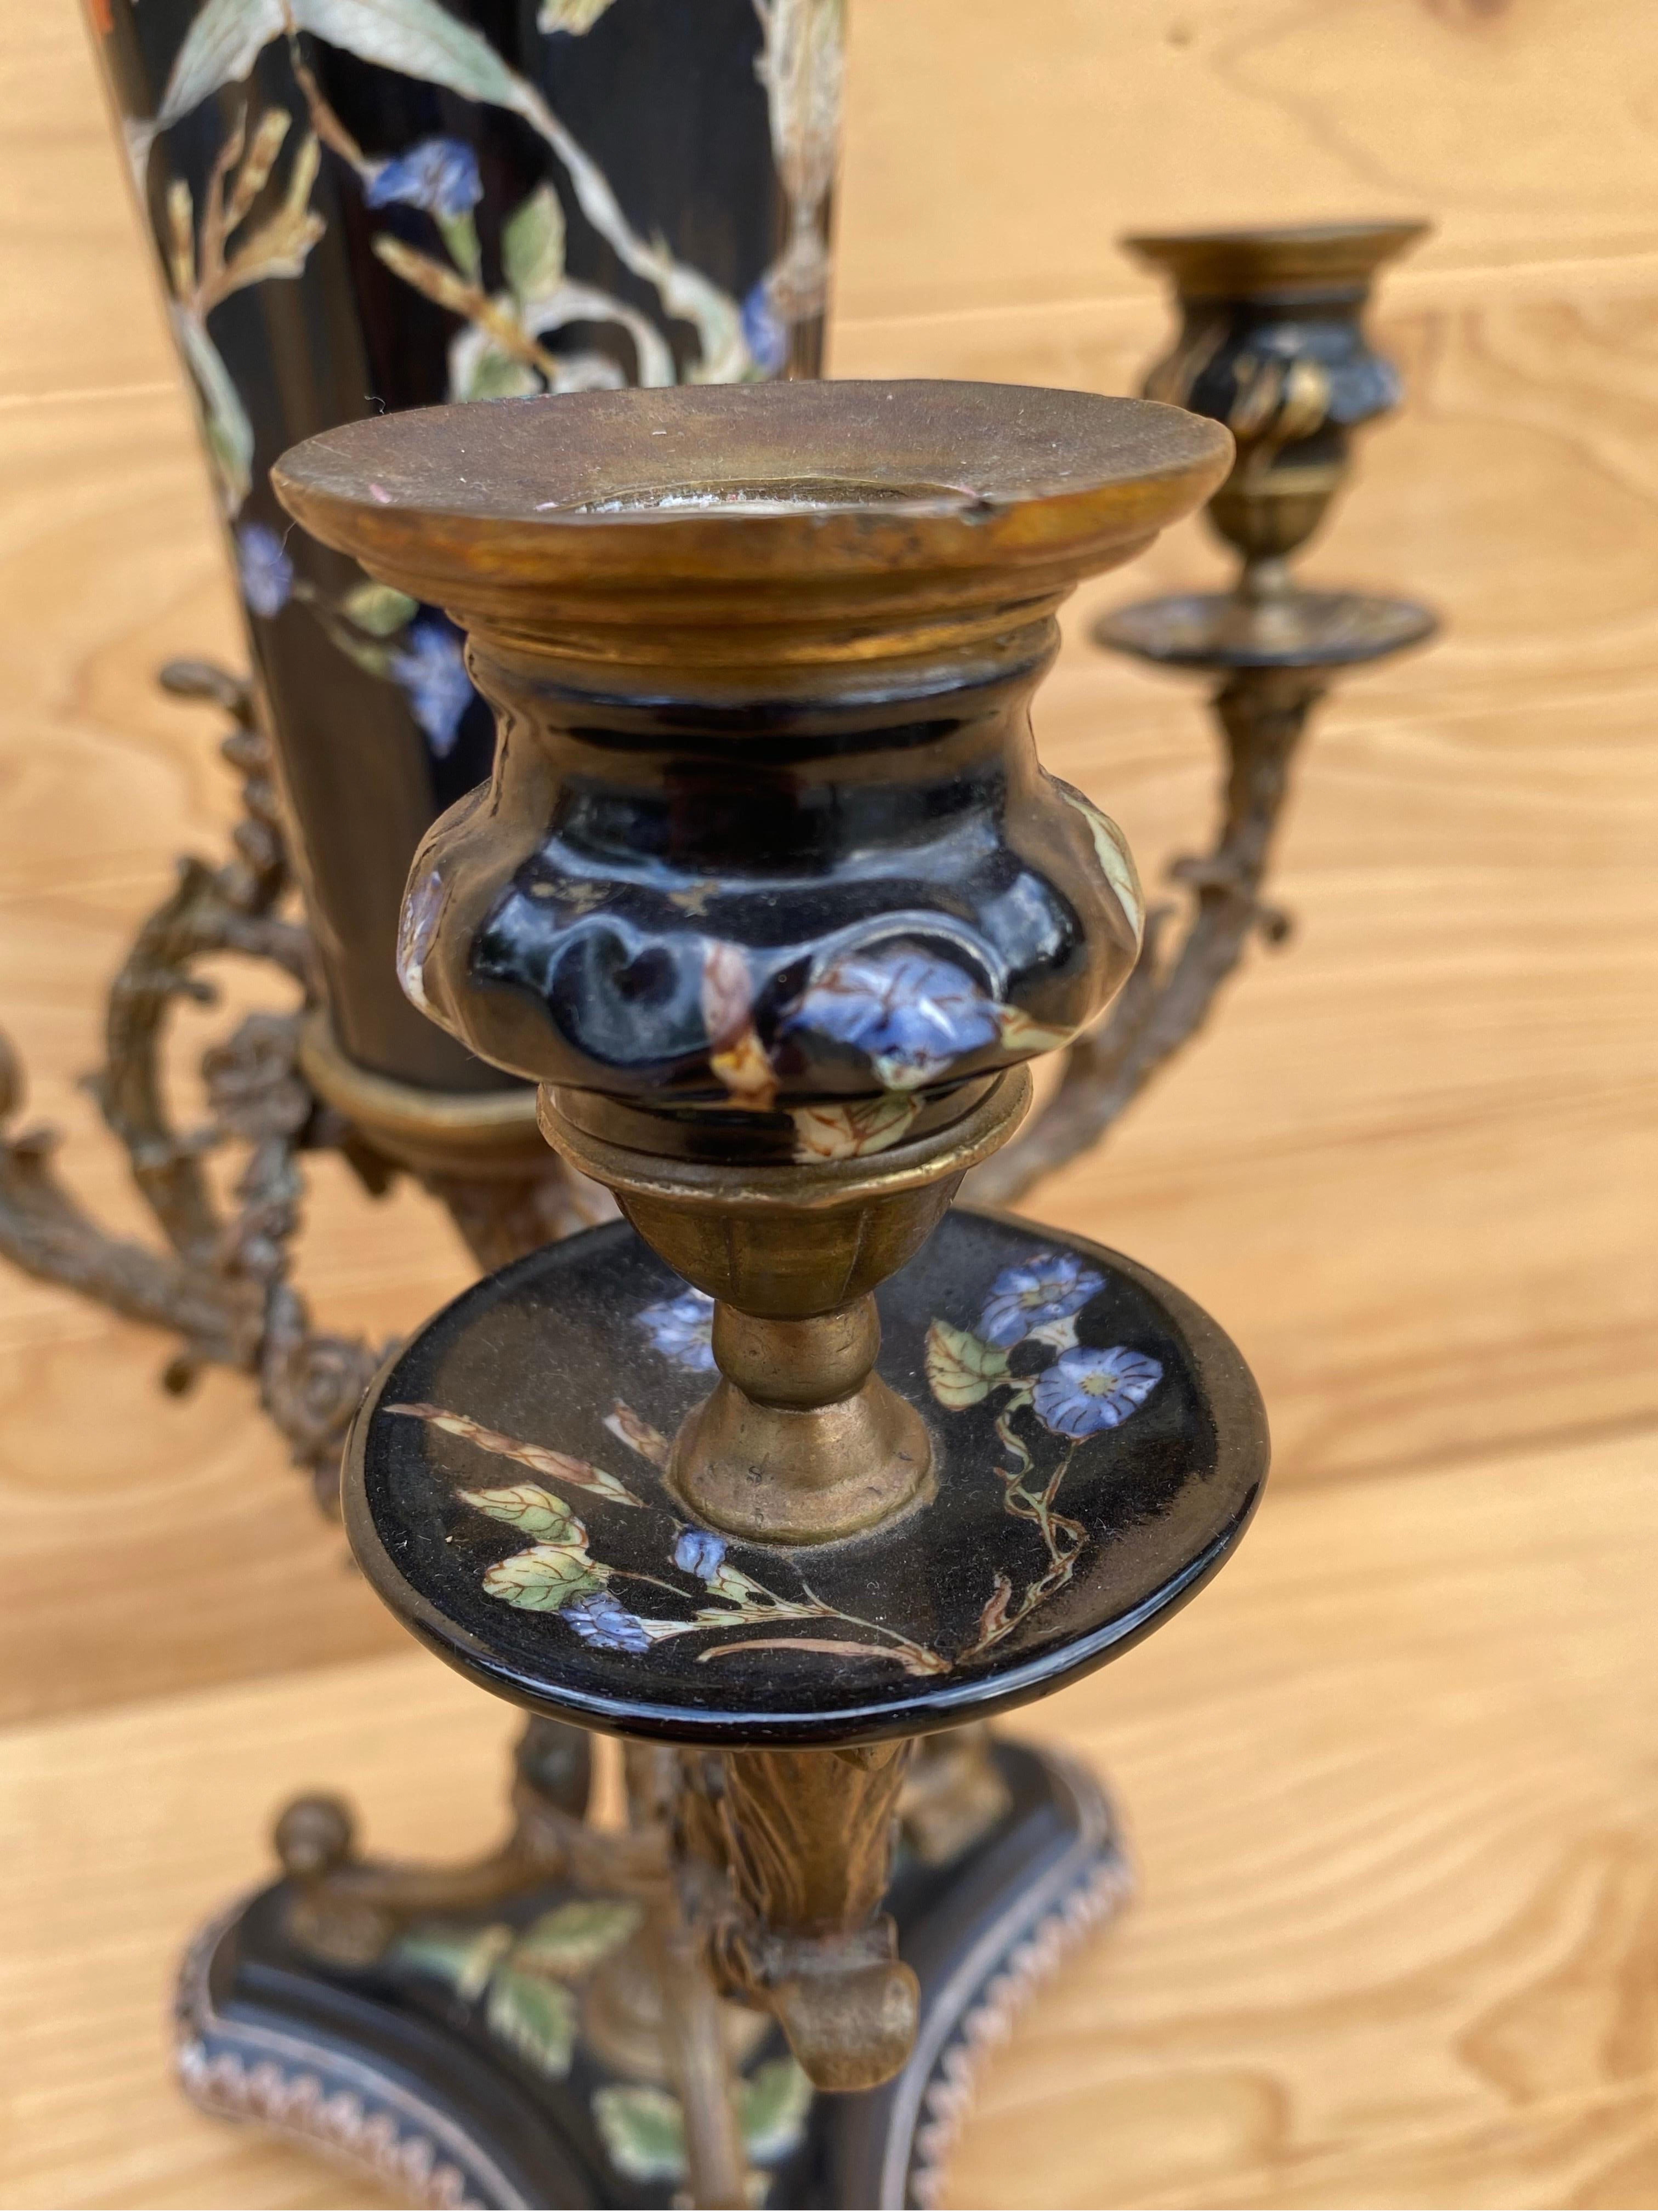 Antike französische Porzellan-Blumenvase mit Messing-Kandelaber

Kombinieren Sie Ihren Kandelaber und Ihre Blumenvase in einem eleganten Stück. Die zentrale Vase hat einen geriffelten Deckel und ist mit schönen handgemalten Blumen bedeckt. Die Vase